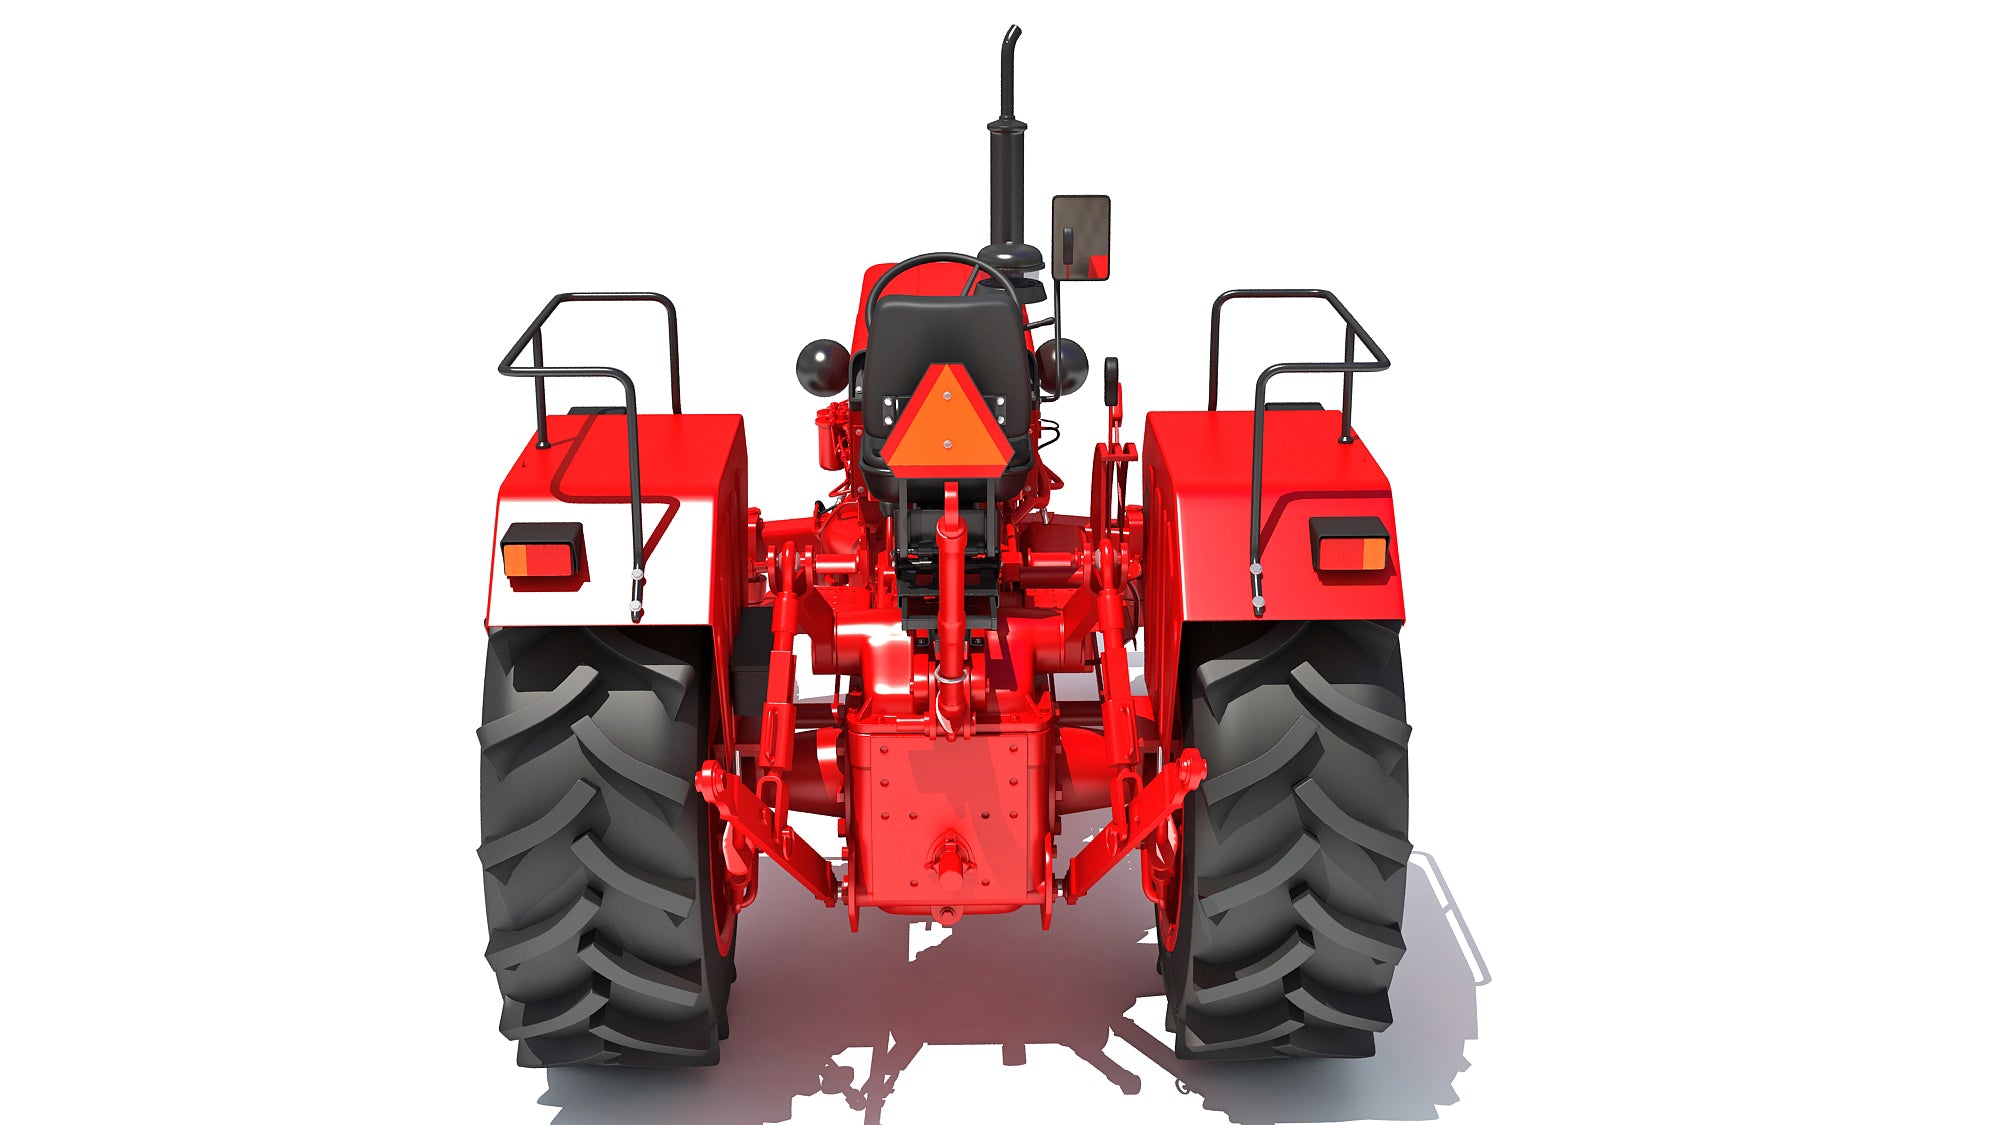 Mahindra Farm Tractor